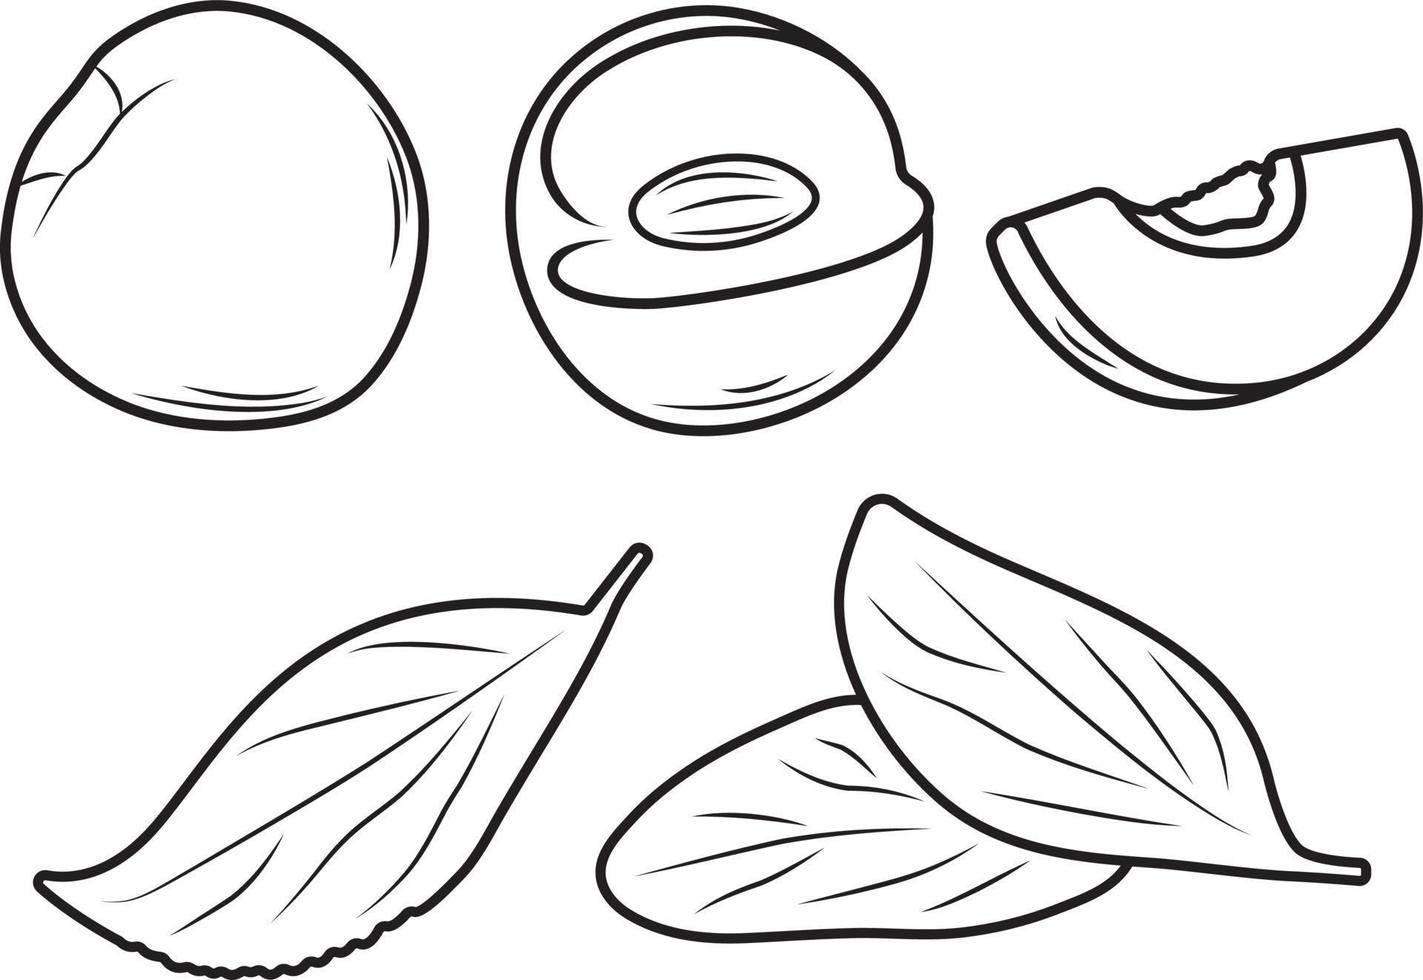 nattarina, pesca o albicocca nel tre forme con le foglie. vettore illustrazione